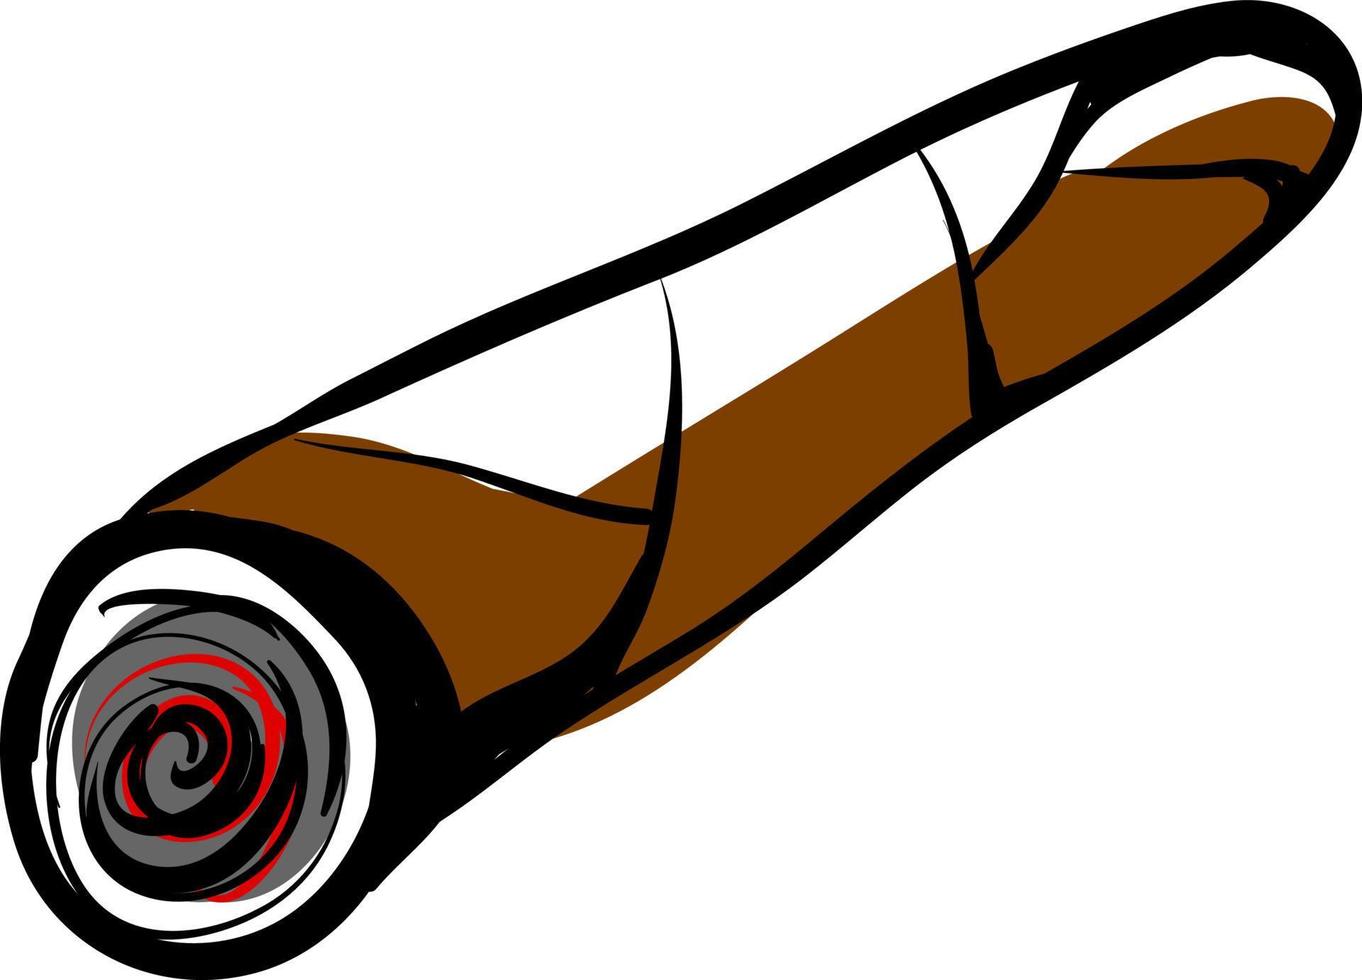 dessin de cigare, illustration, vecteur sur fond blanc.